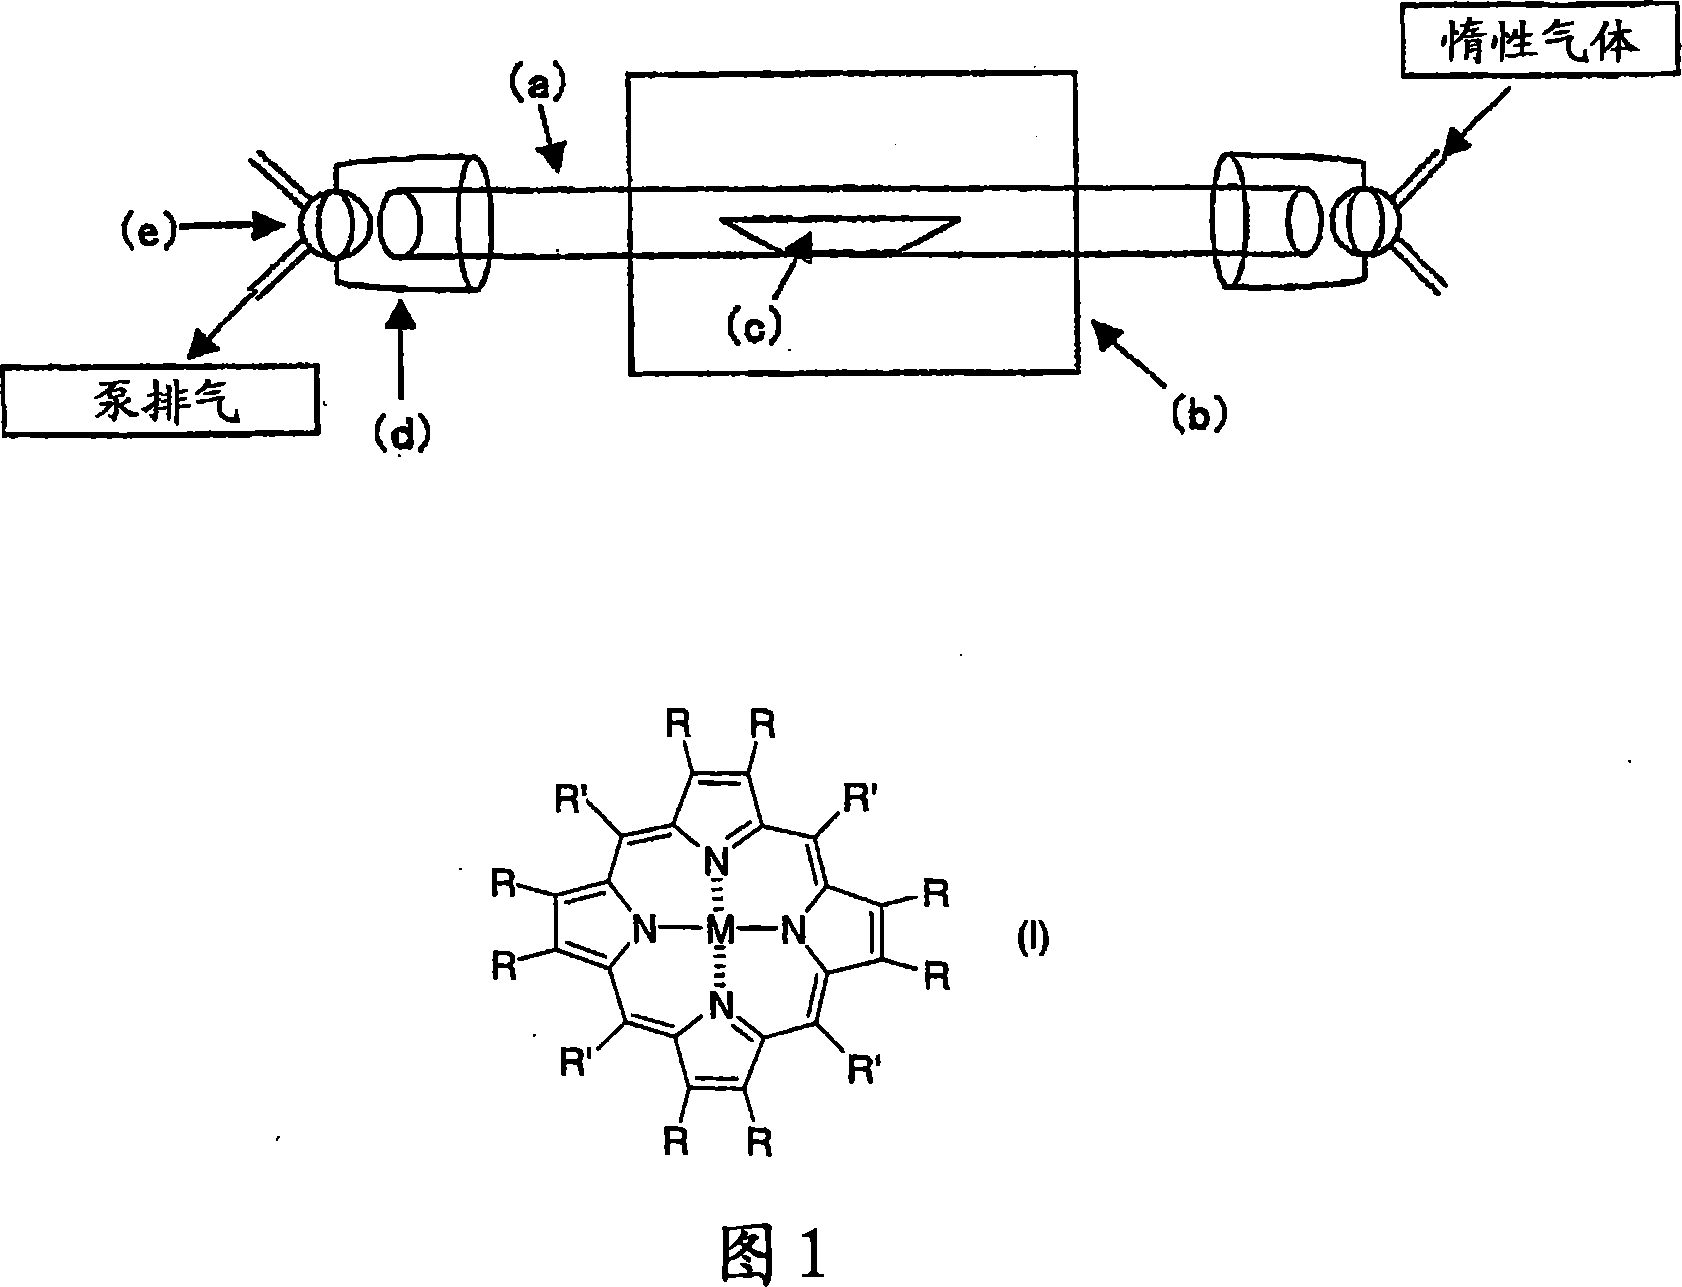 Porphyrin-based electrode catalyst